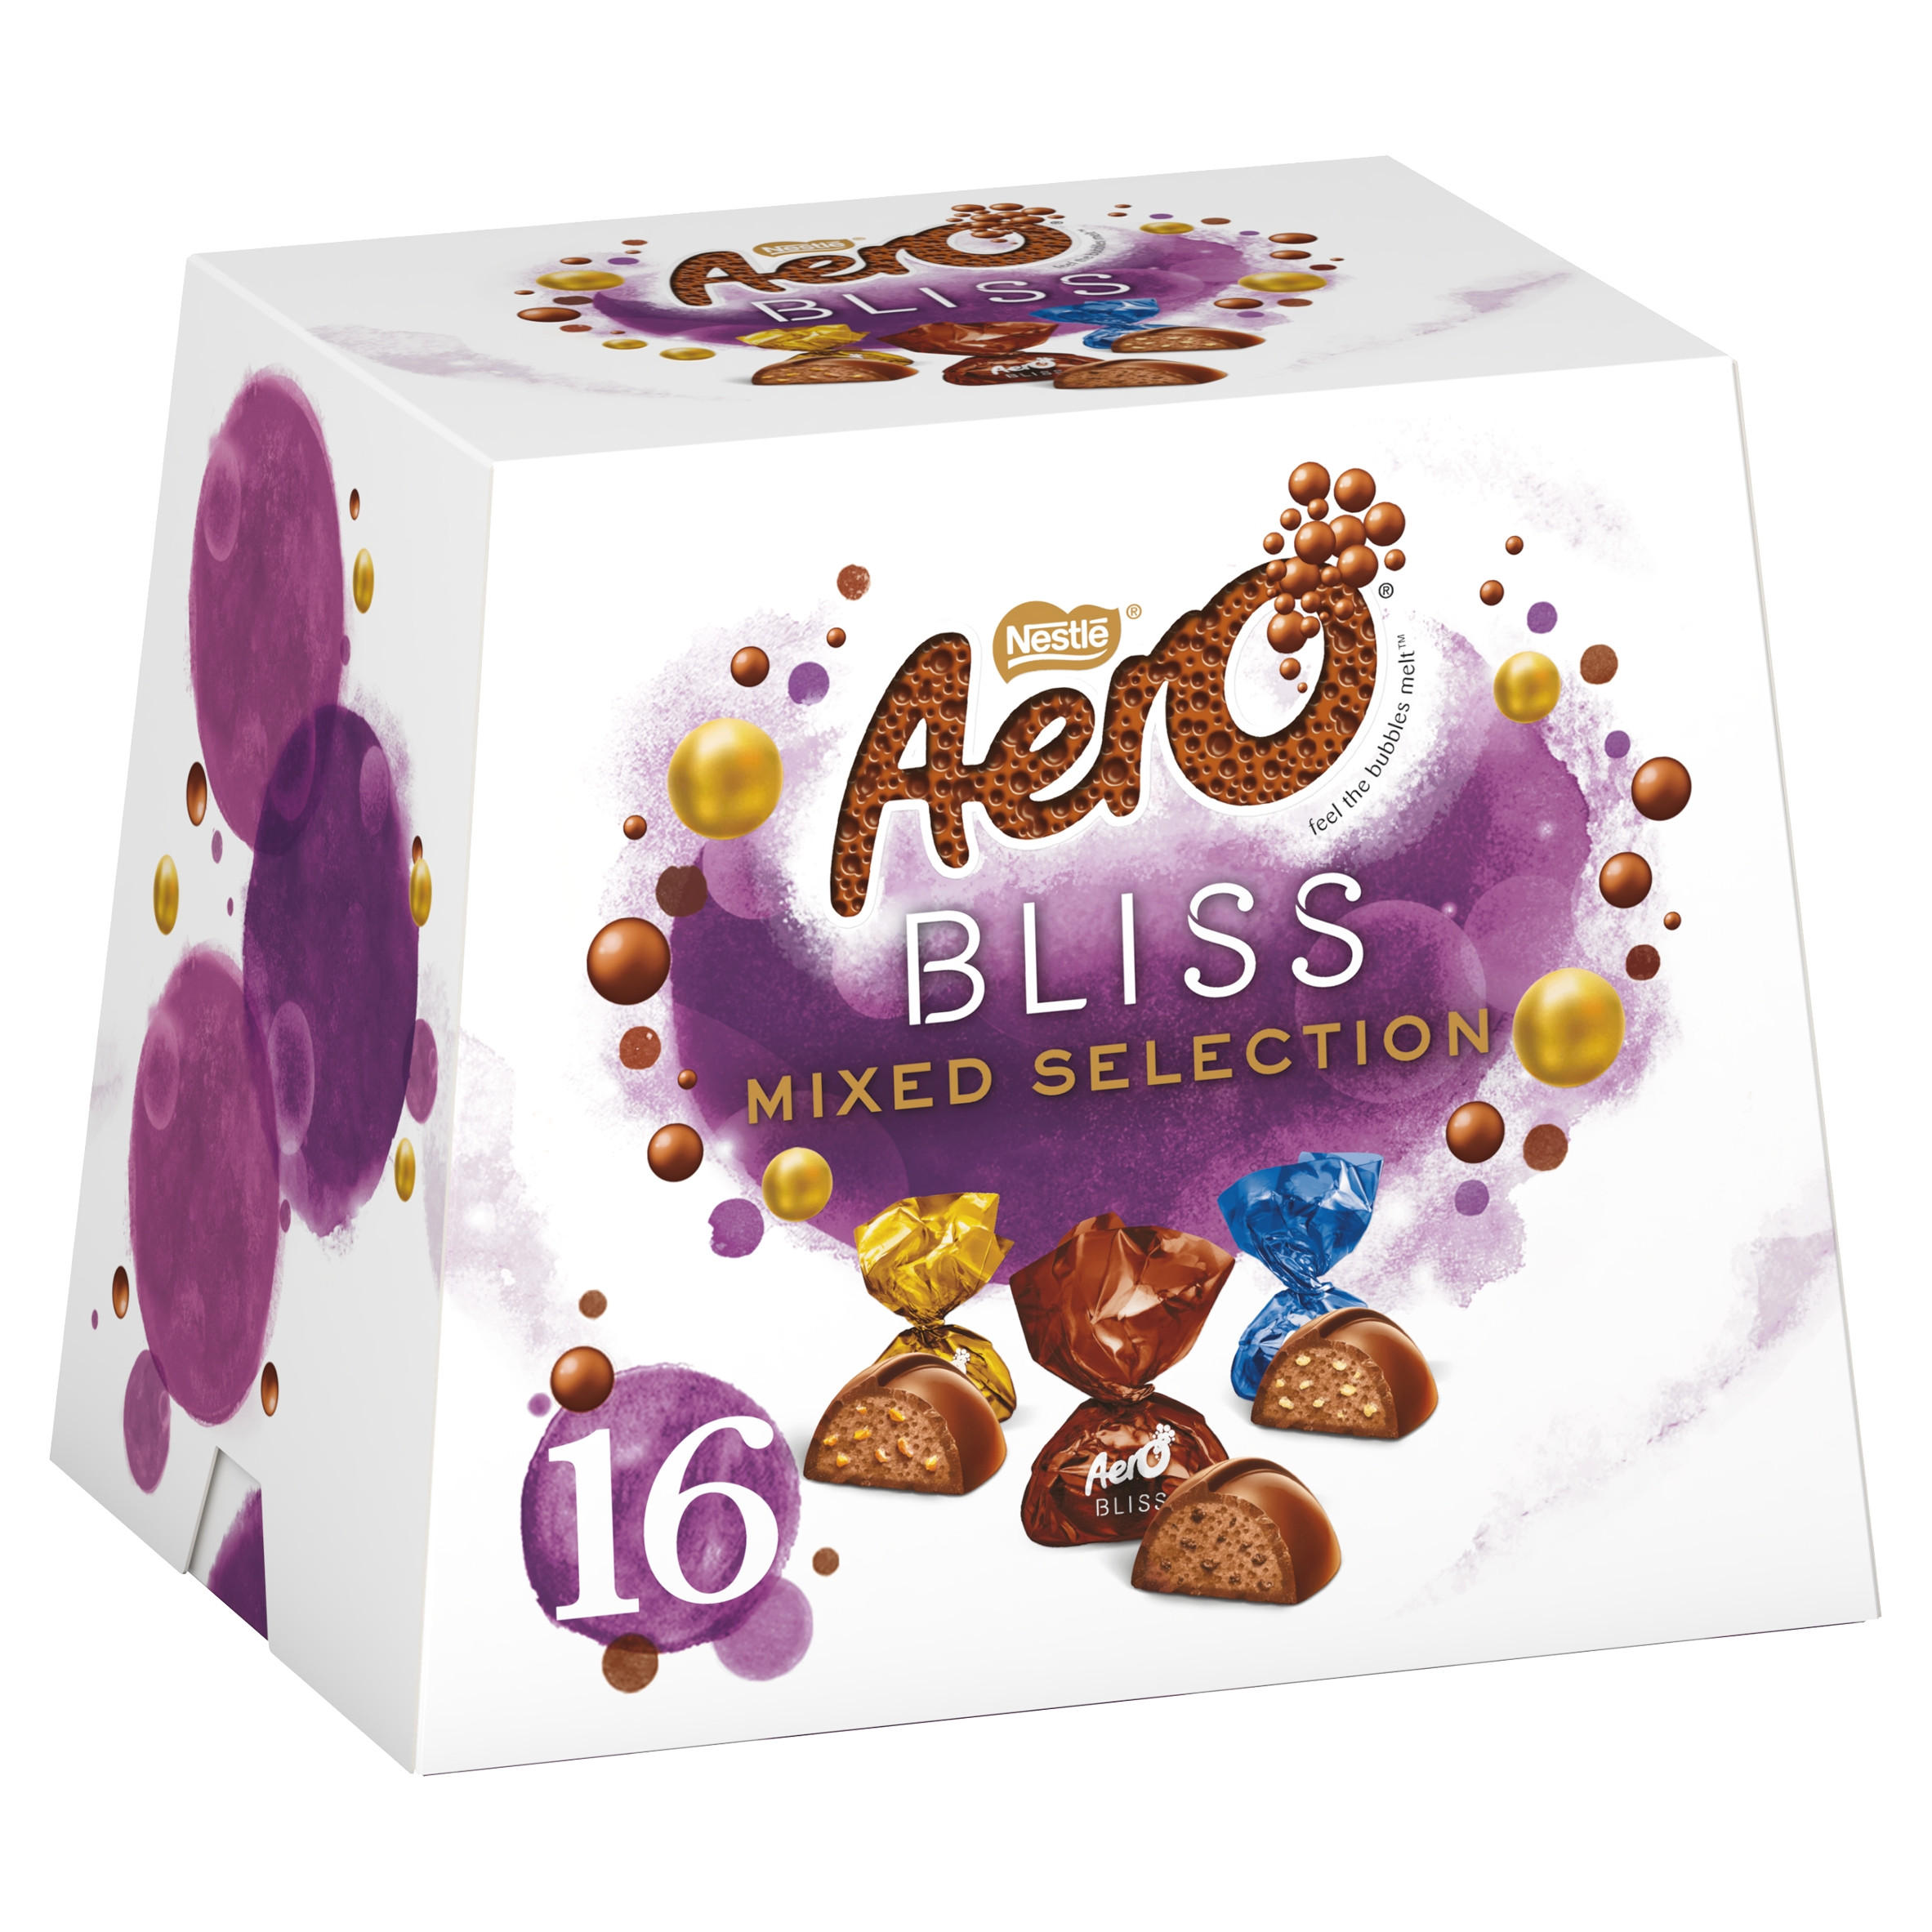 Aero Bliss Mixed Selection Chocolate Sharing Box 144g Sharing Bags